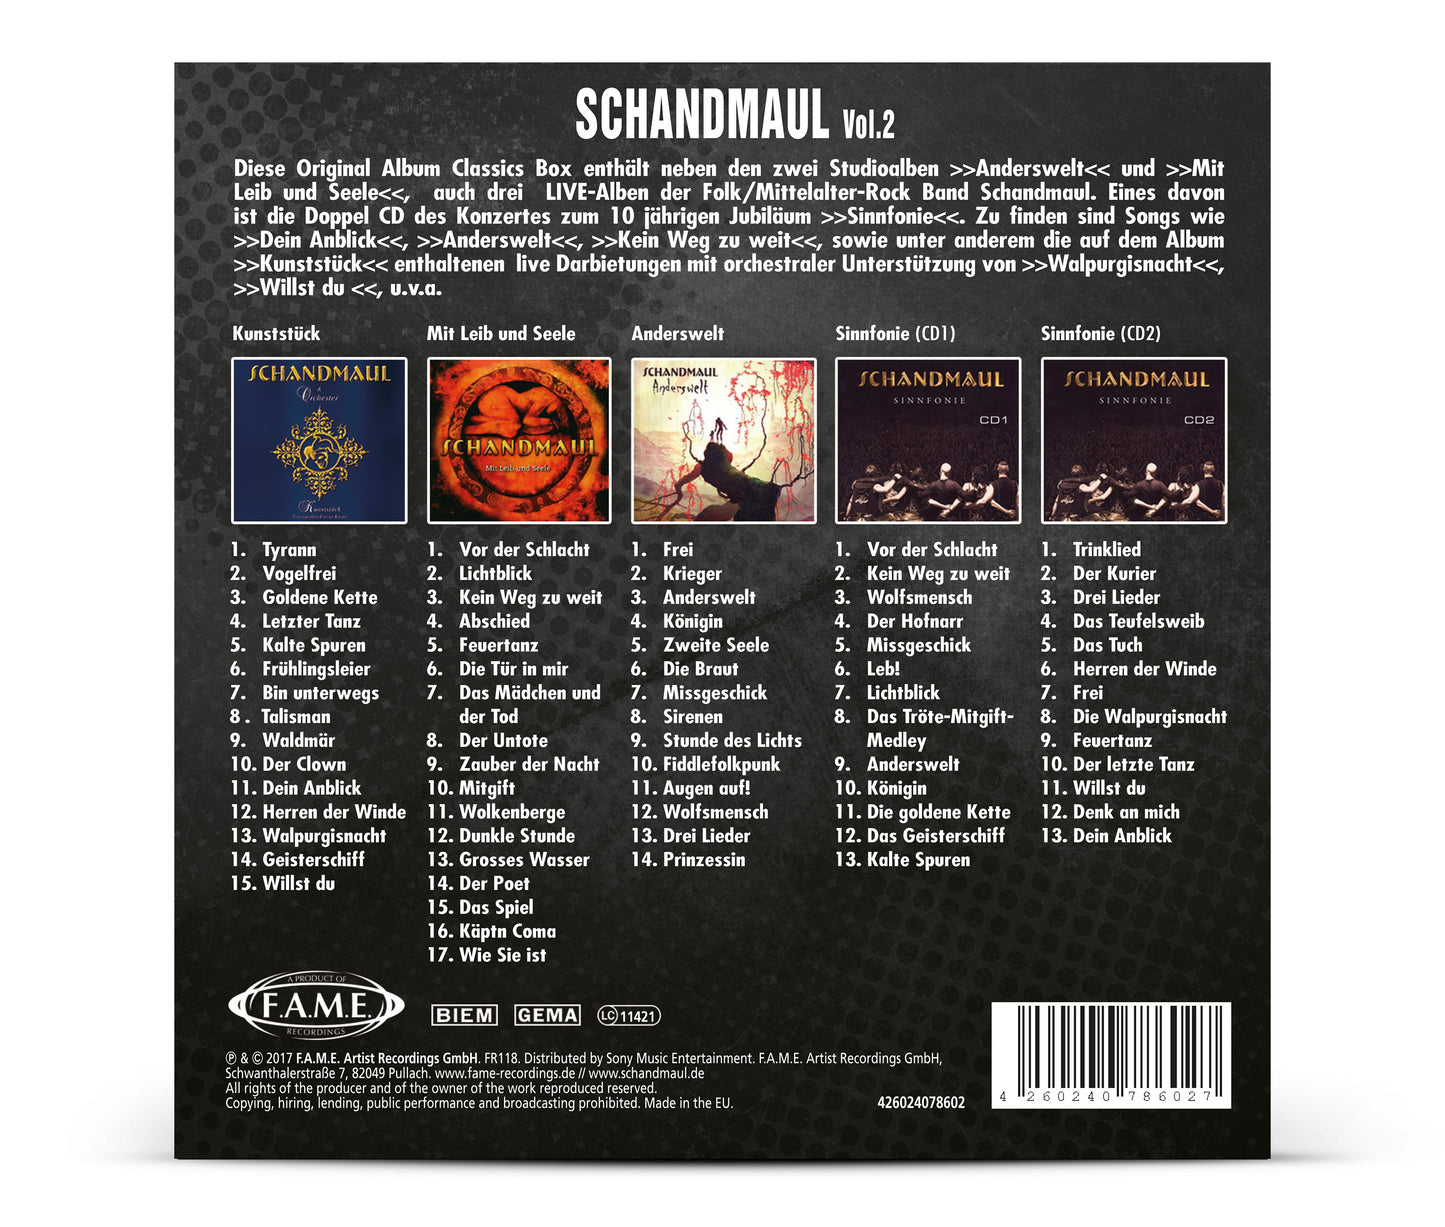 SCHANDMAUL - Original Album Classics Vol. 2 Box-Set